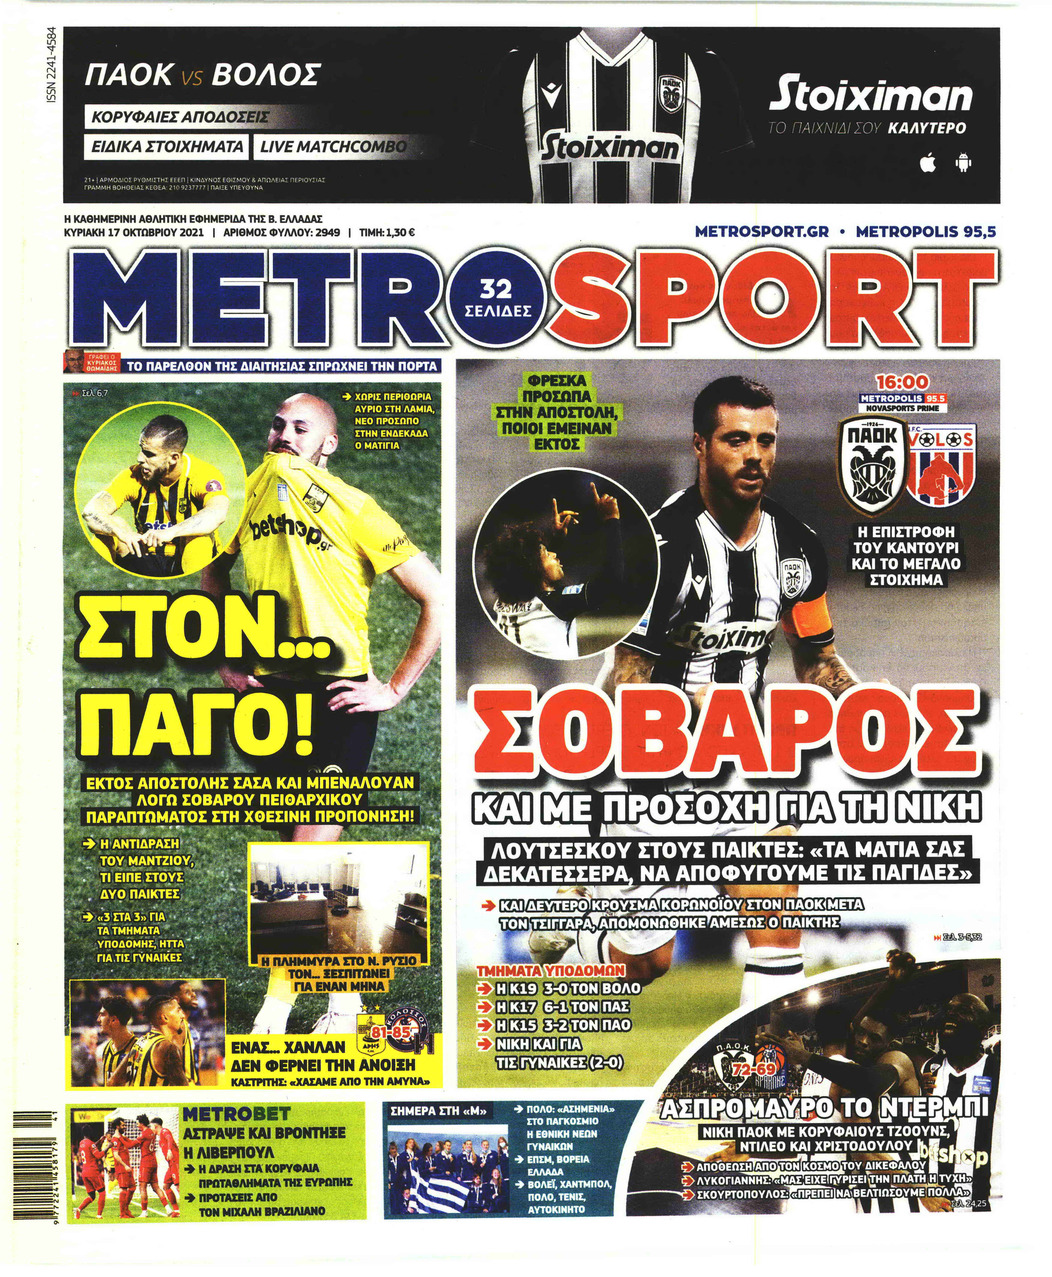 Πρωτοσέλιδο εφημερίδας Metrosport